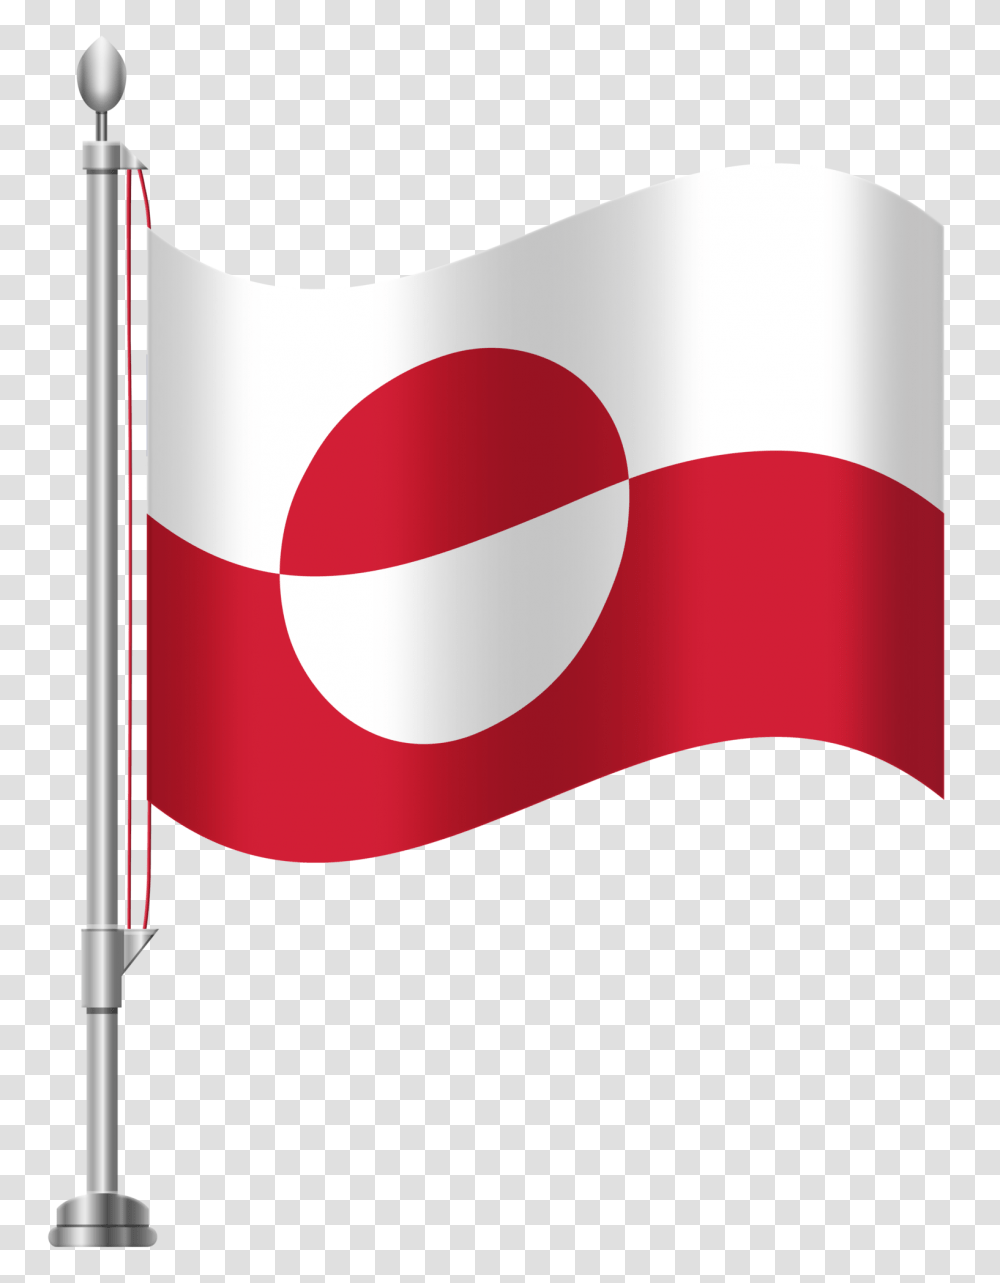 Greenland Flag Clip Art, Soda, Beverage, Drink Transparent Png